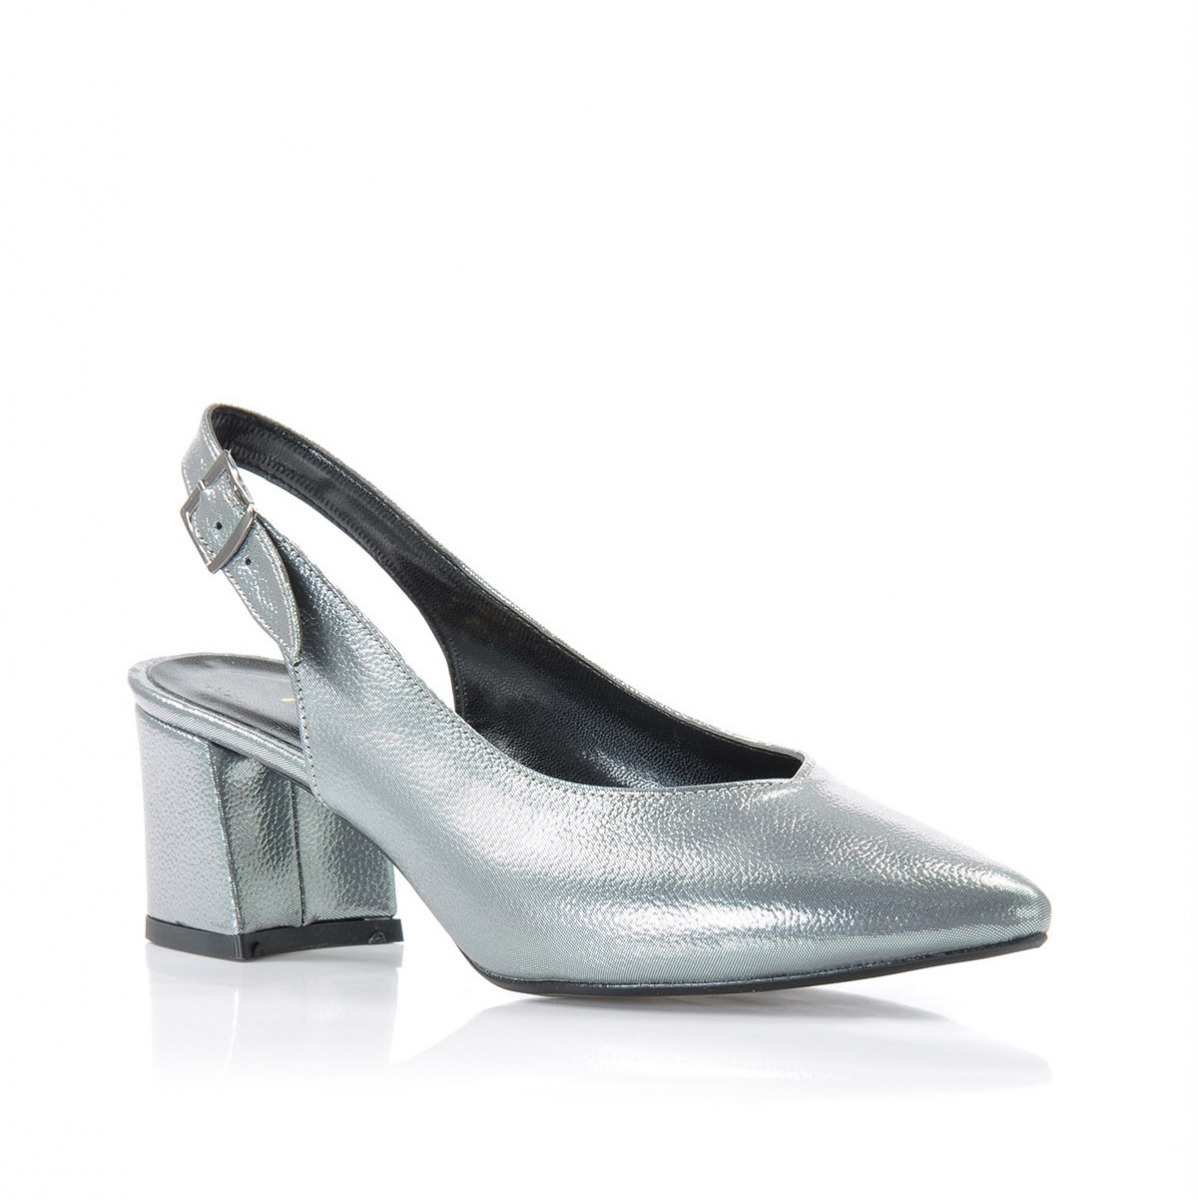 Flo Kadın  Gümüş Klasik Topuklu Ayakkabı VZN-086Y. 3